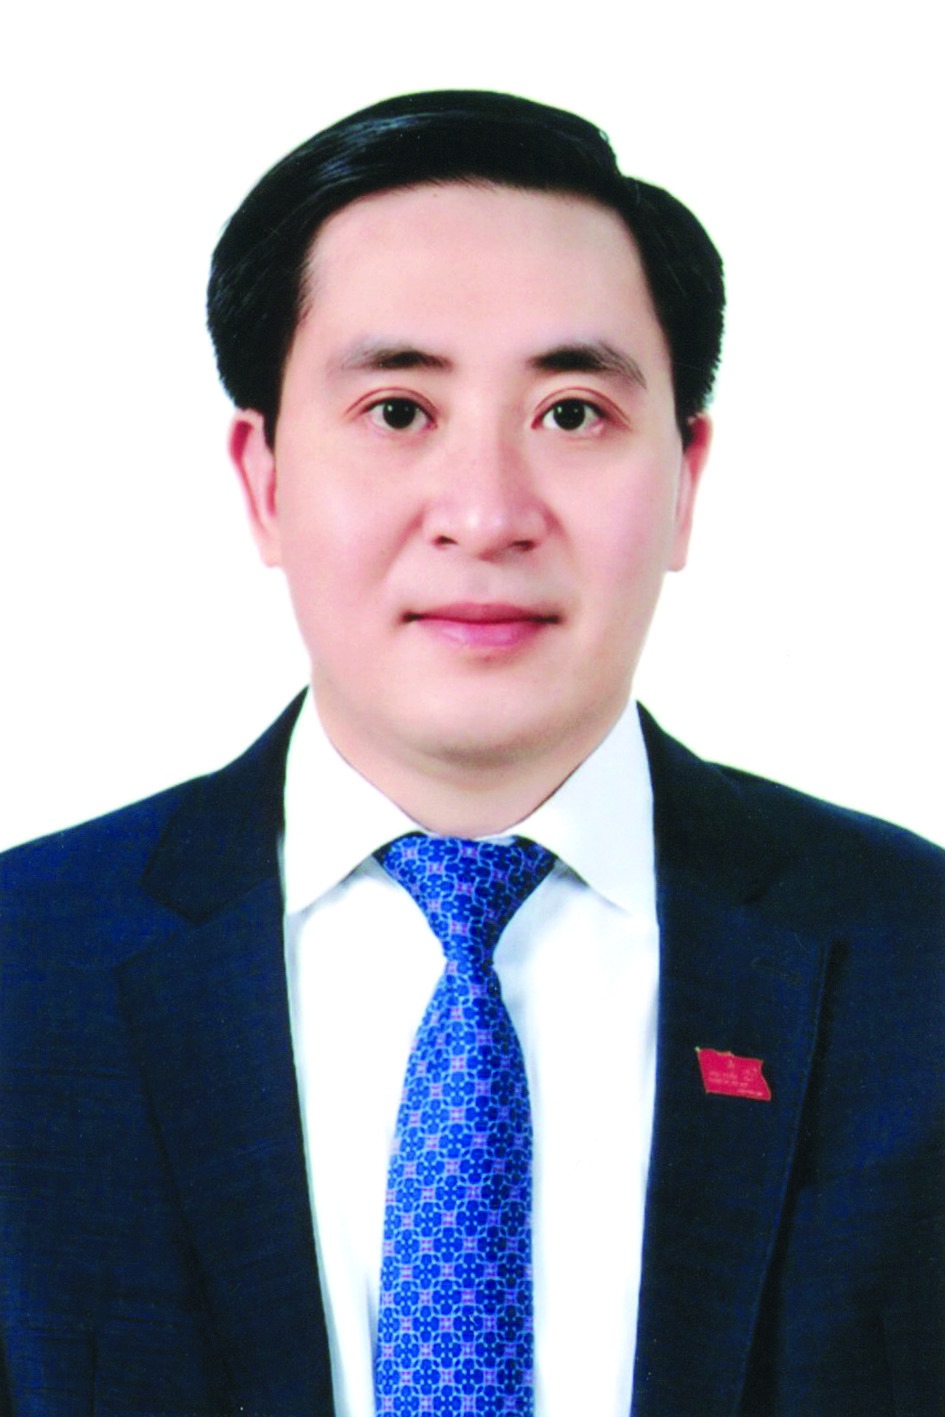 Chương trình hành động của Phó Trưởng ban Kinh tế - Ngân sách HĐND TP Hà Nội Vũ Ngọc Anh, ứng cử viên đại biểu HĐND TP Hà Nội nhiệm kỳ 2021 - 2026 - Ảnh 1